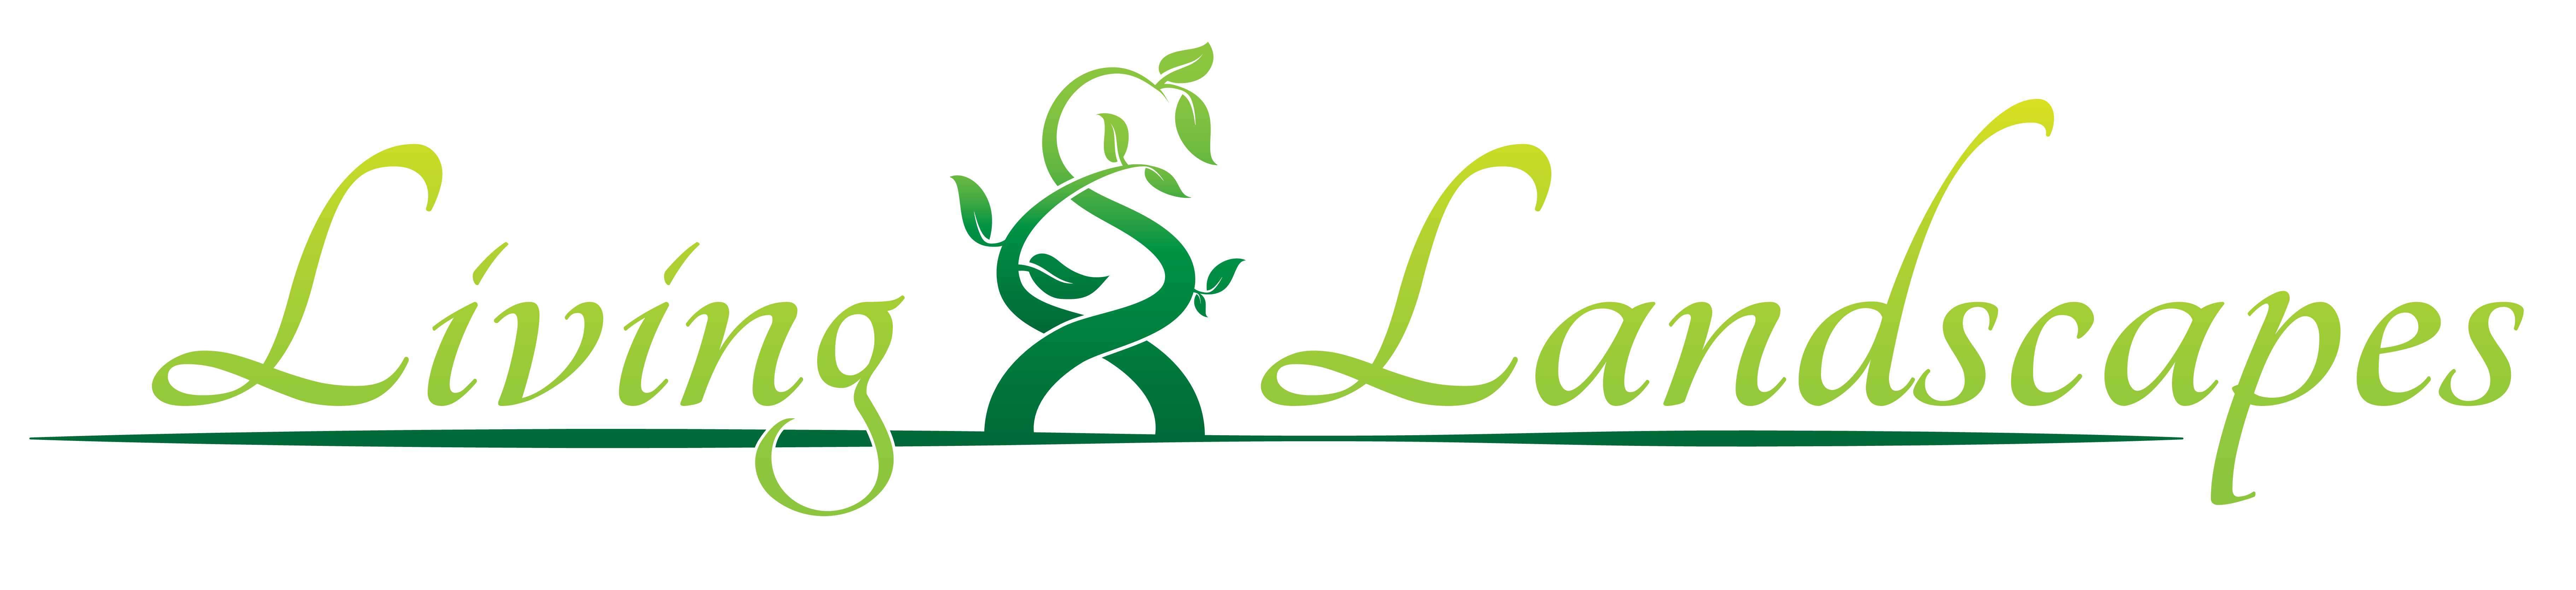 Landscaping clipart landscape logo, Landscaping landscape logo